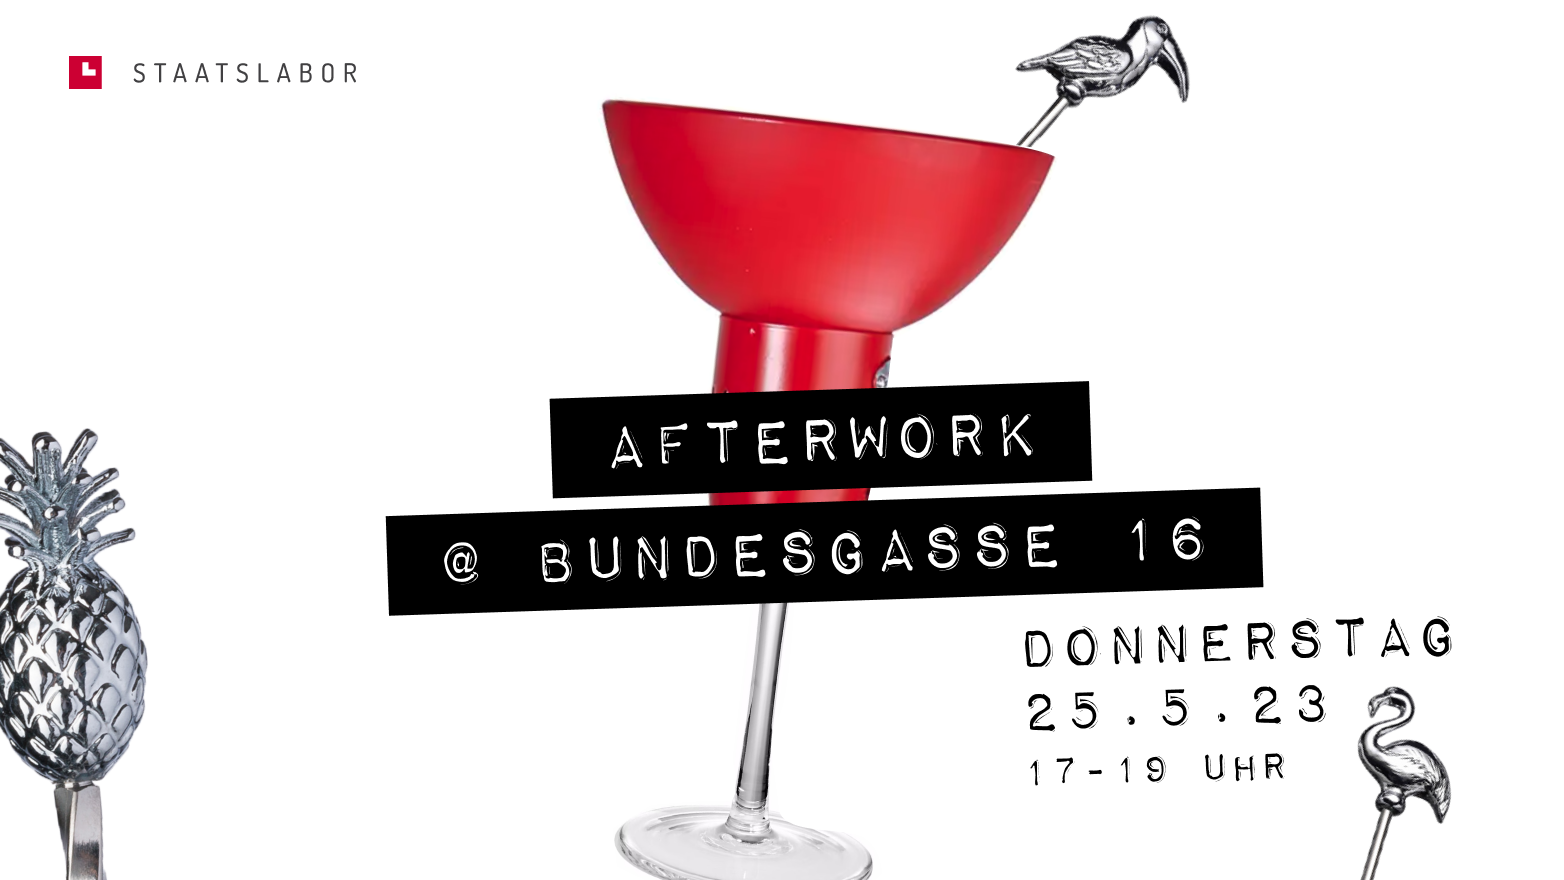 Afterwork-Event Mai an der Bundesgasse 16